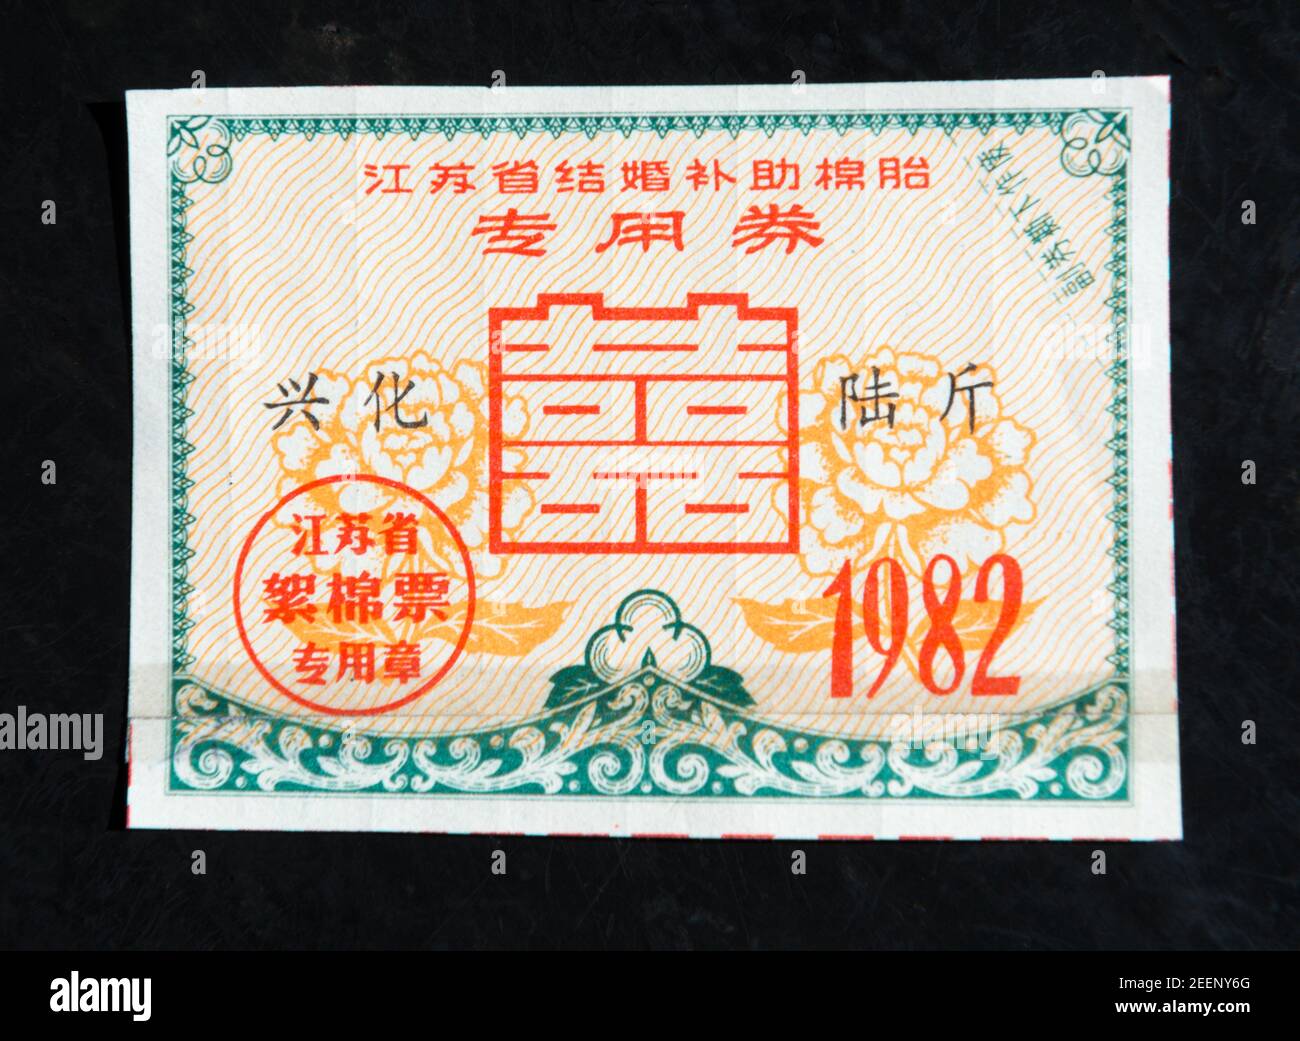 Ein Wattebausch-Gutschein speziell für Brautpaare, der 1982 in der Provinz Jiangsu, China, verwendet wurde. (Private Sammlung) Stockfoto